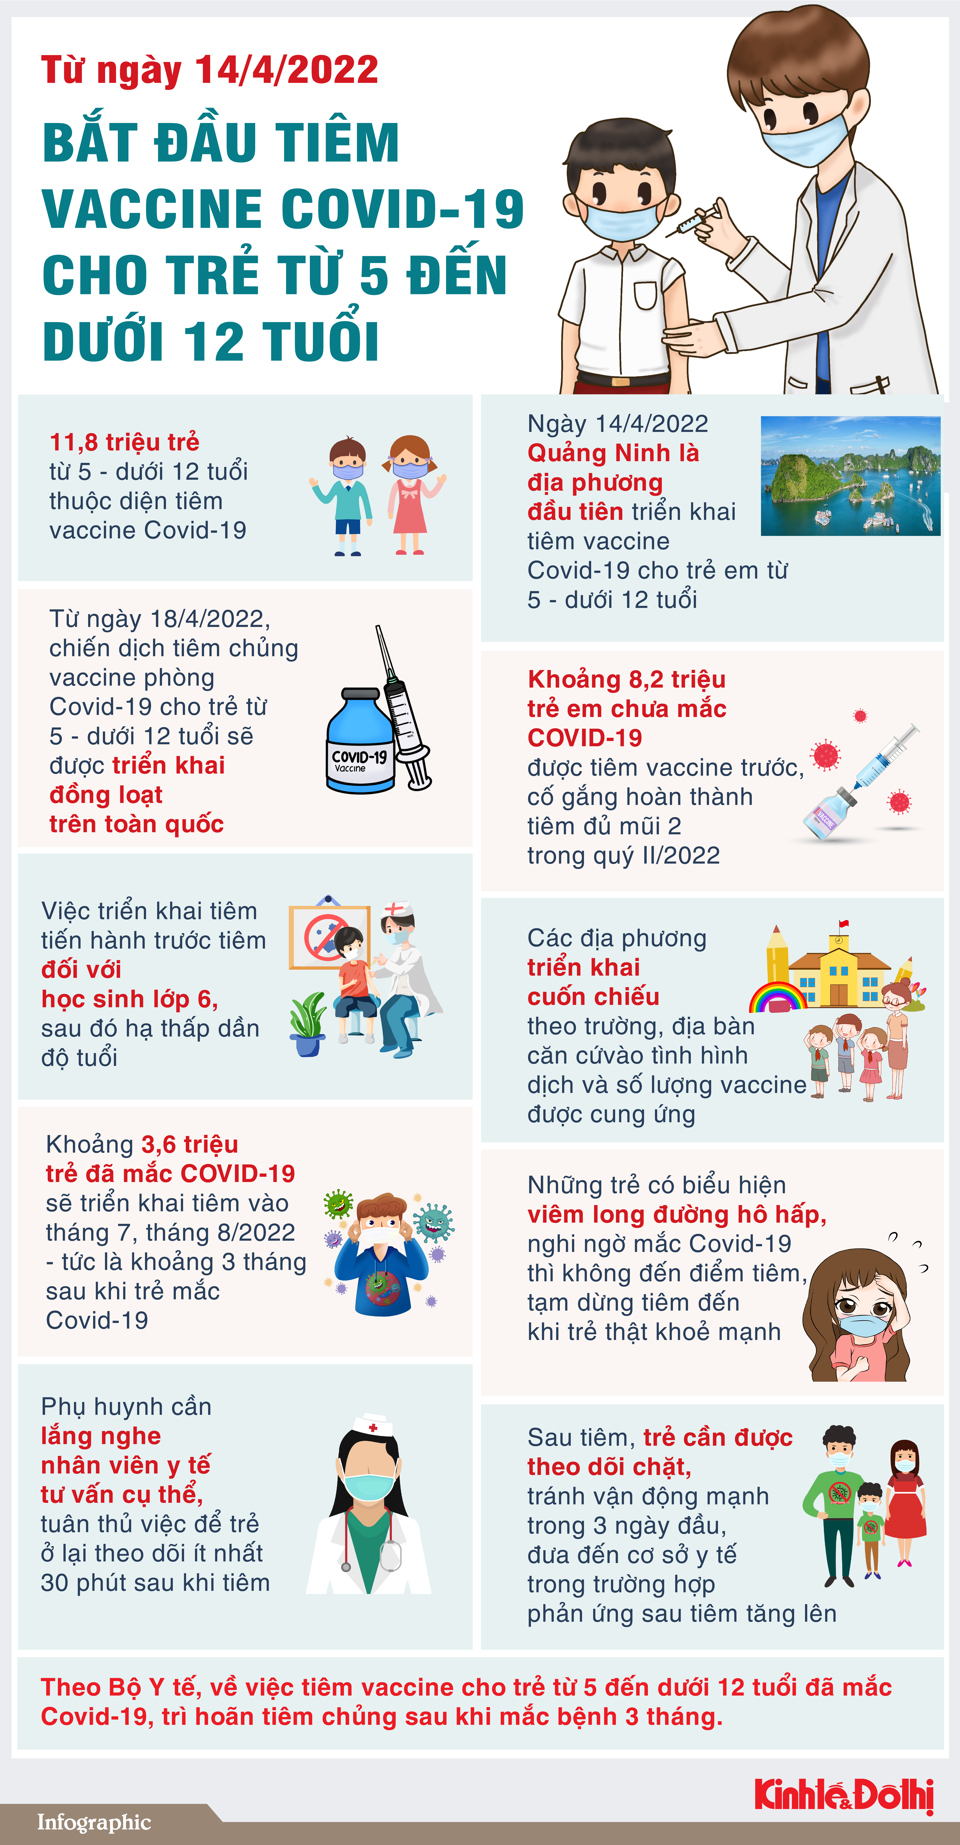 Bắt đầu tiêm vaccine Covid-19 cho trẻ từ 5 - dưới 12 tuổi - Ảnh 1